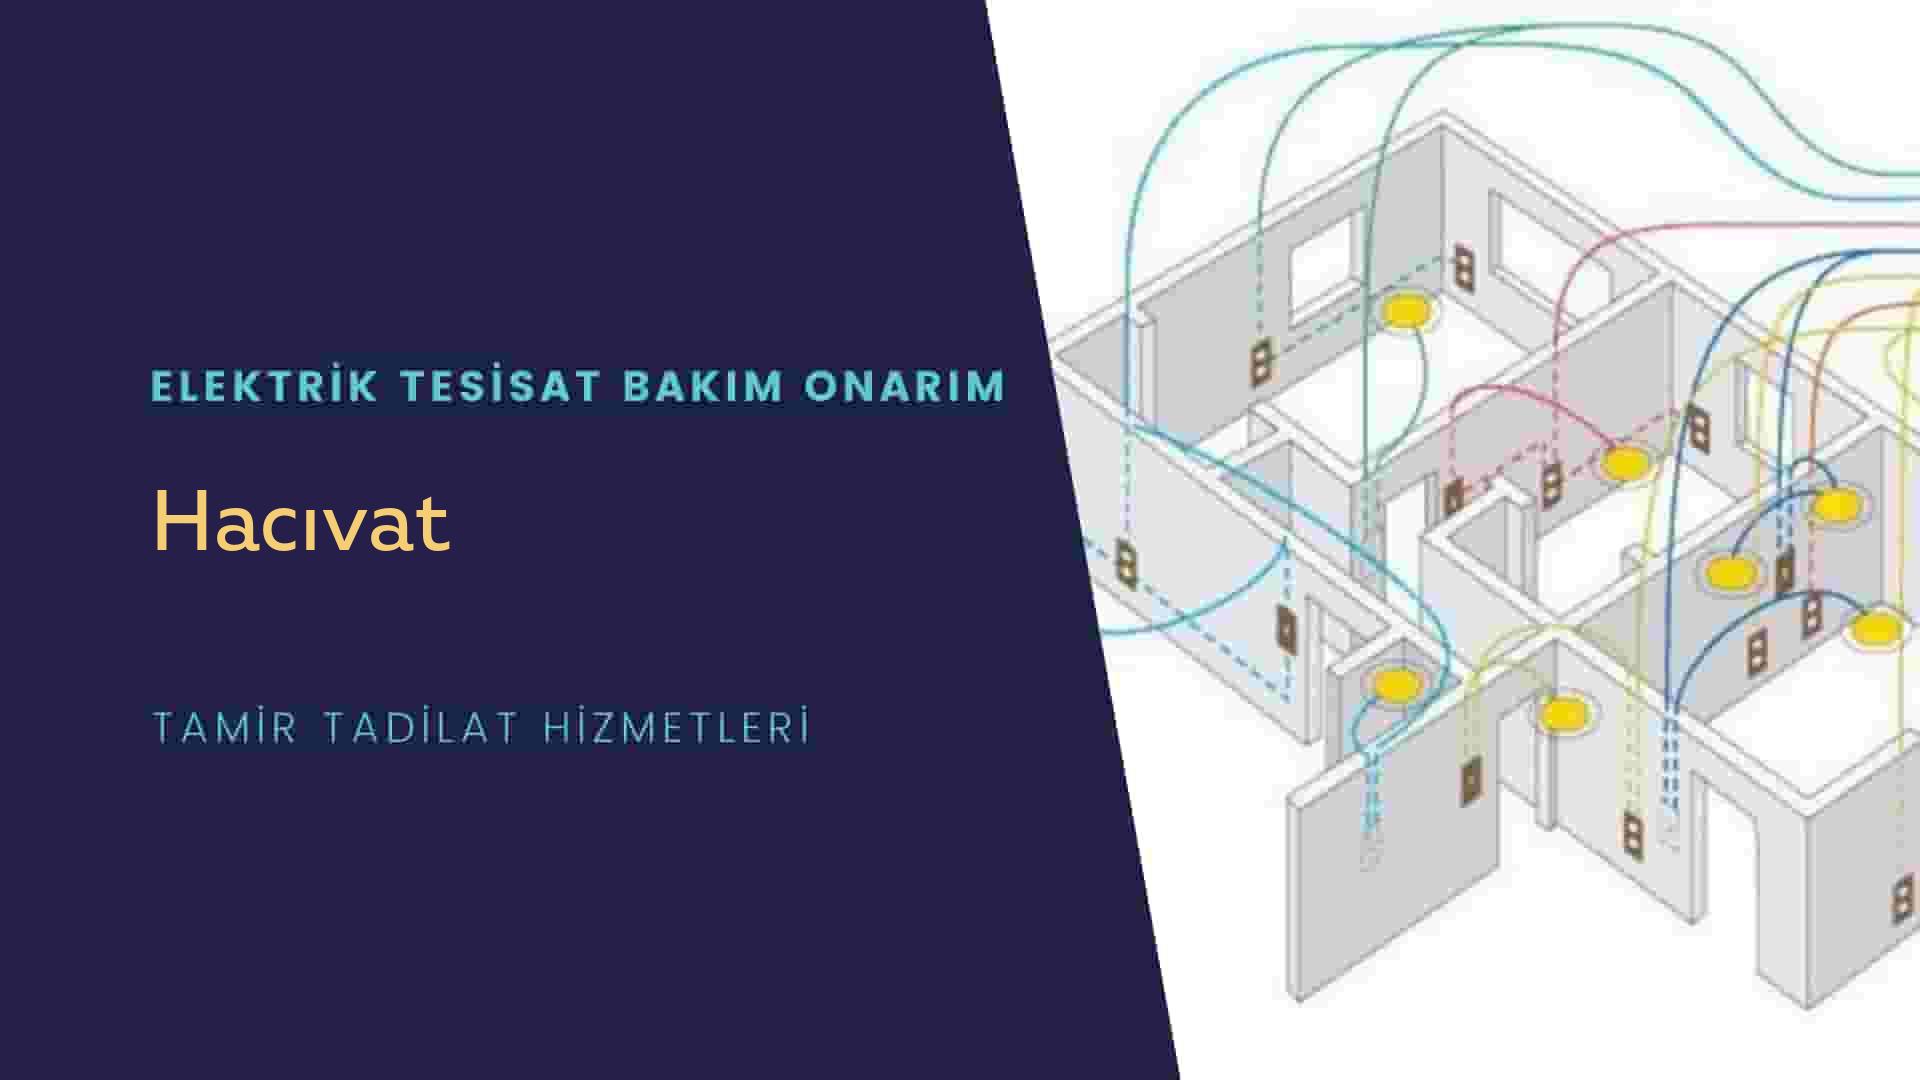 Hacıvat'ta elektrik tesisatı ustalarımı arıyorsunuz doğru adrestenizi Hacıvat elektrik tesisatı ustalarımız 7/24 sizlere hizmet vermekten mutluluk duyar.